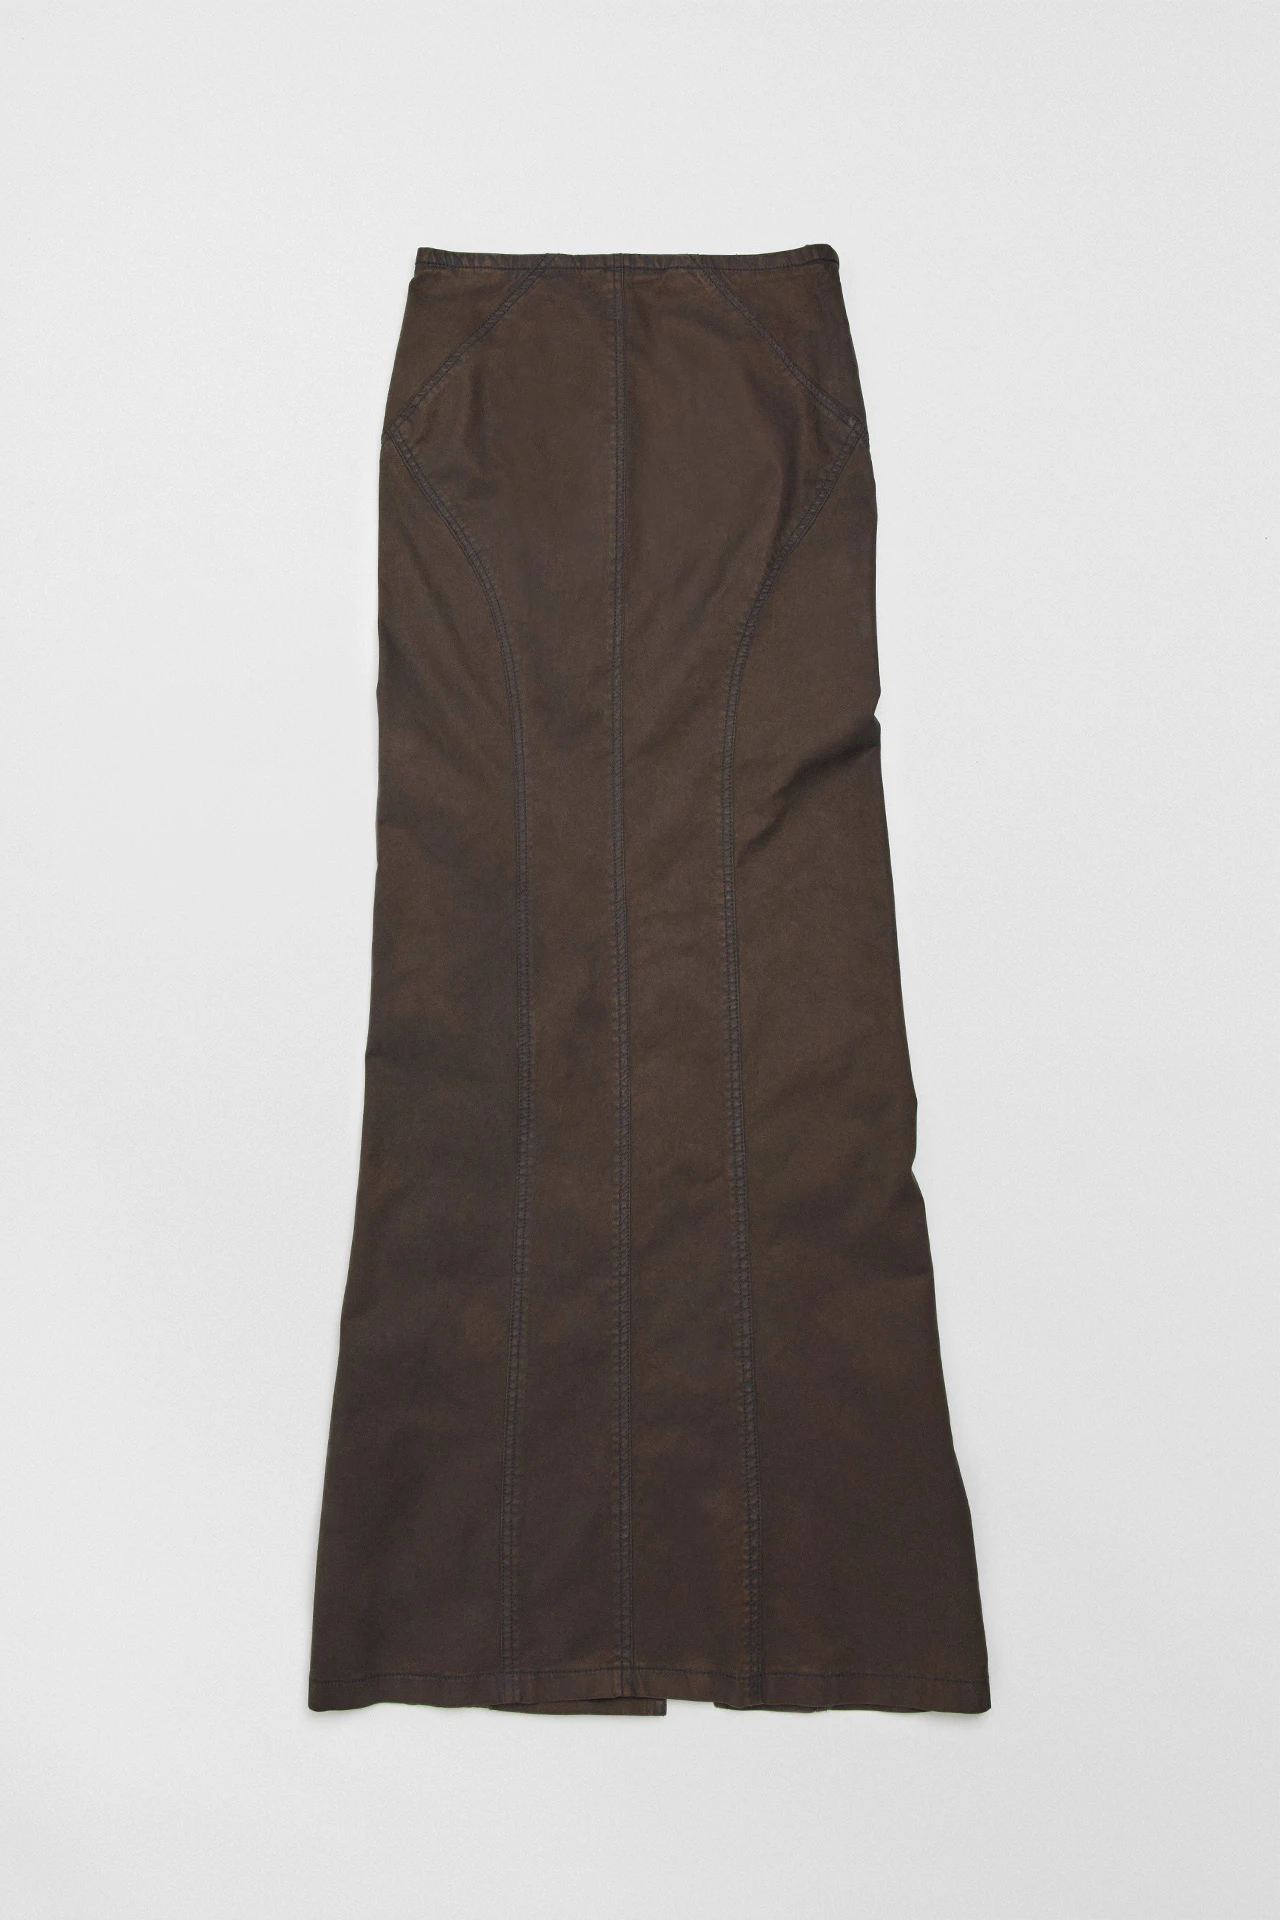 Miista-luz-brown-skirt-01